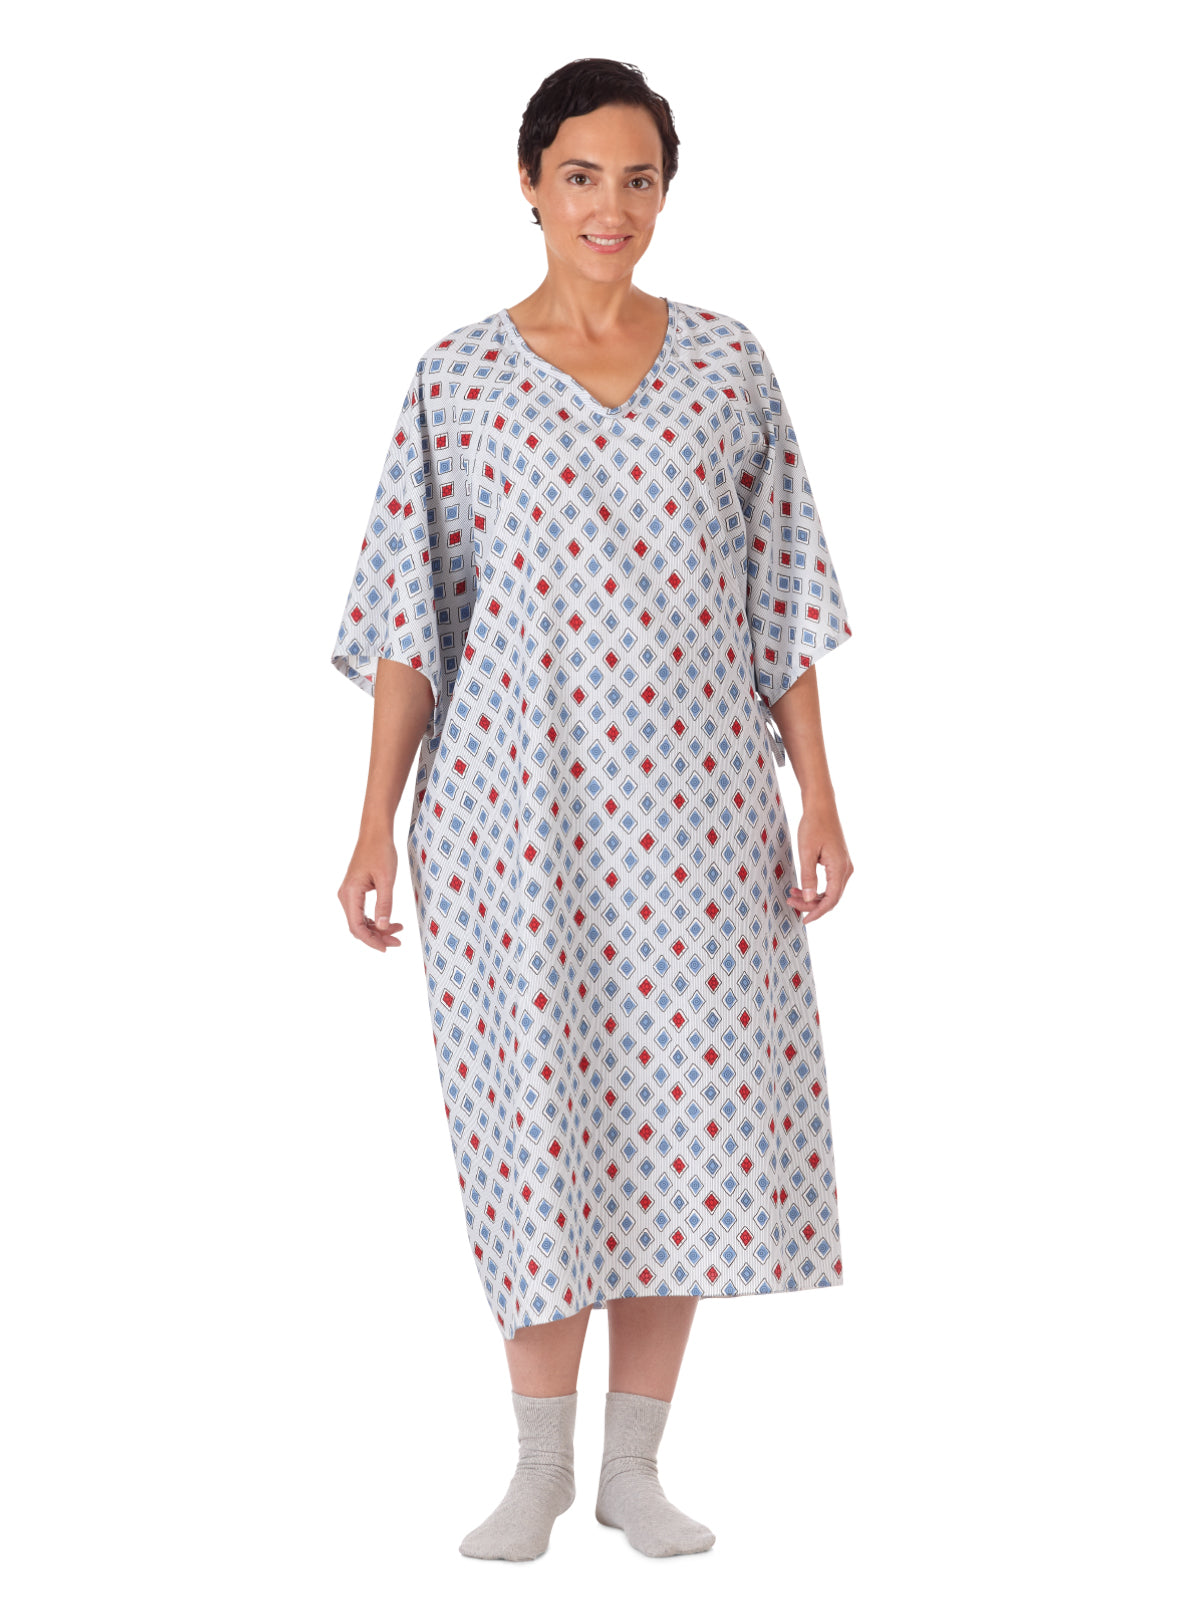 Unisex Patient Gown - 45313 - Blue/Mauve Atlantis